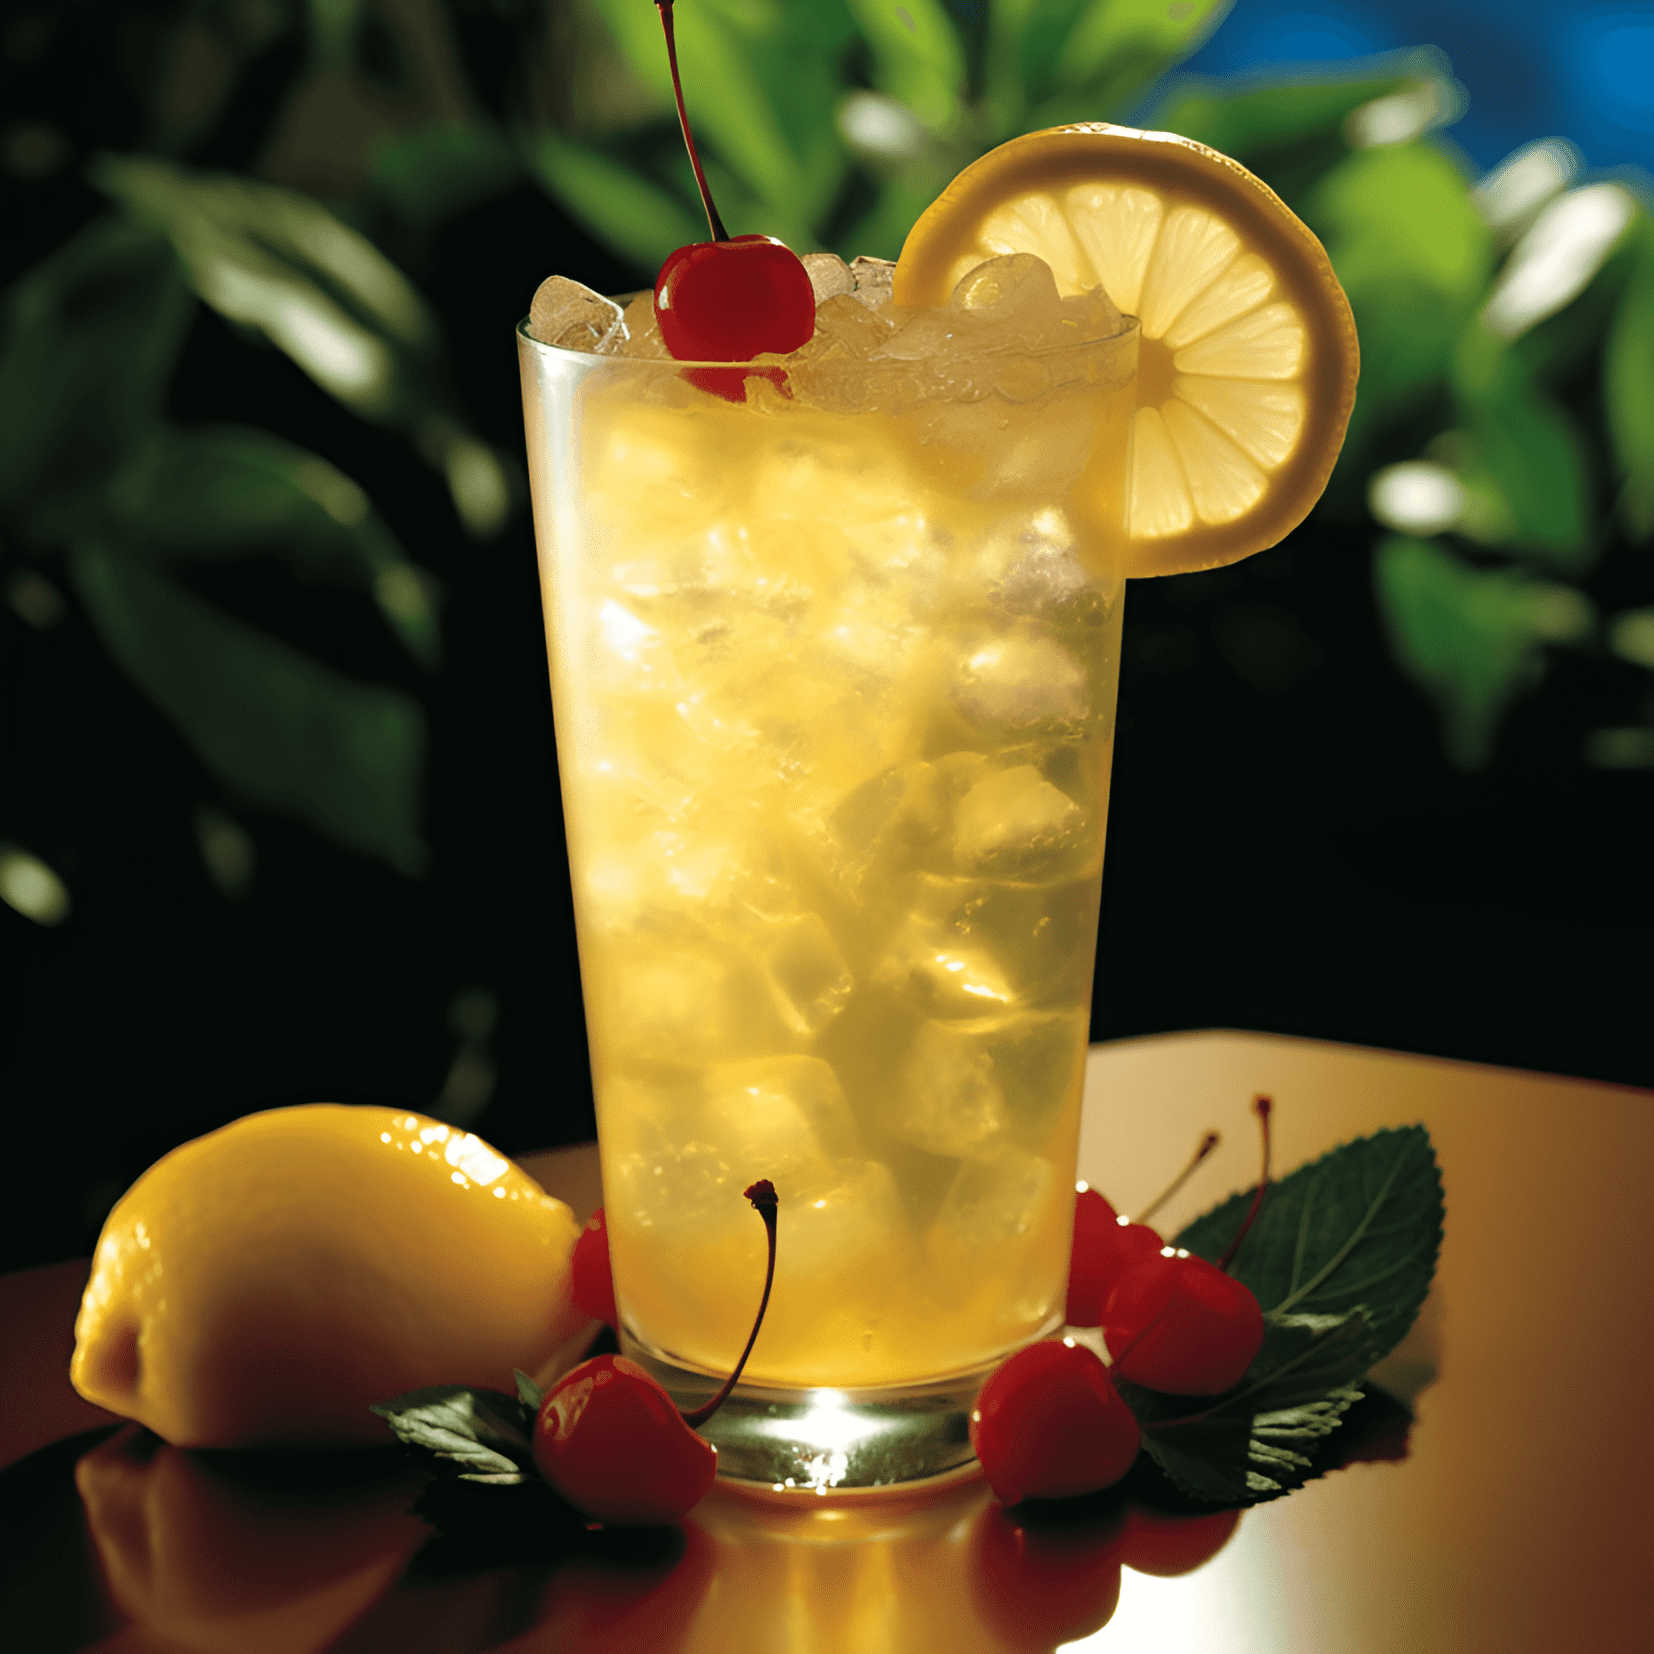 Lynchburg Lemonade Cóctel Receta - El Lynchburg Lemonade tiene un sabor refrescante, dulce y picante con un toque de calor de whiskey. Es una mezcla bien equilibrada de sabores agrios, dulces y ligeramente amargos, lo que lo convierte en una bebida perfecta para el verano.